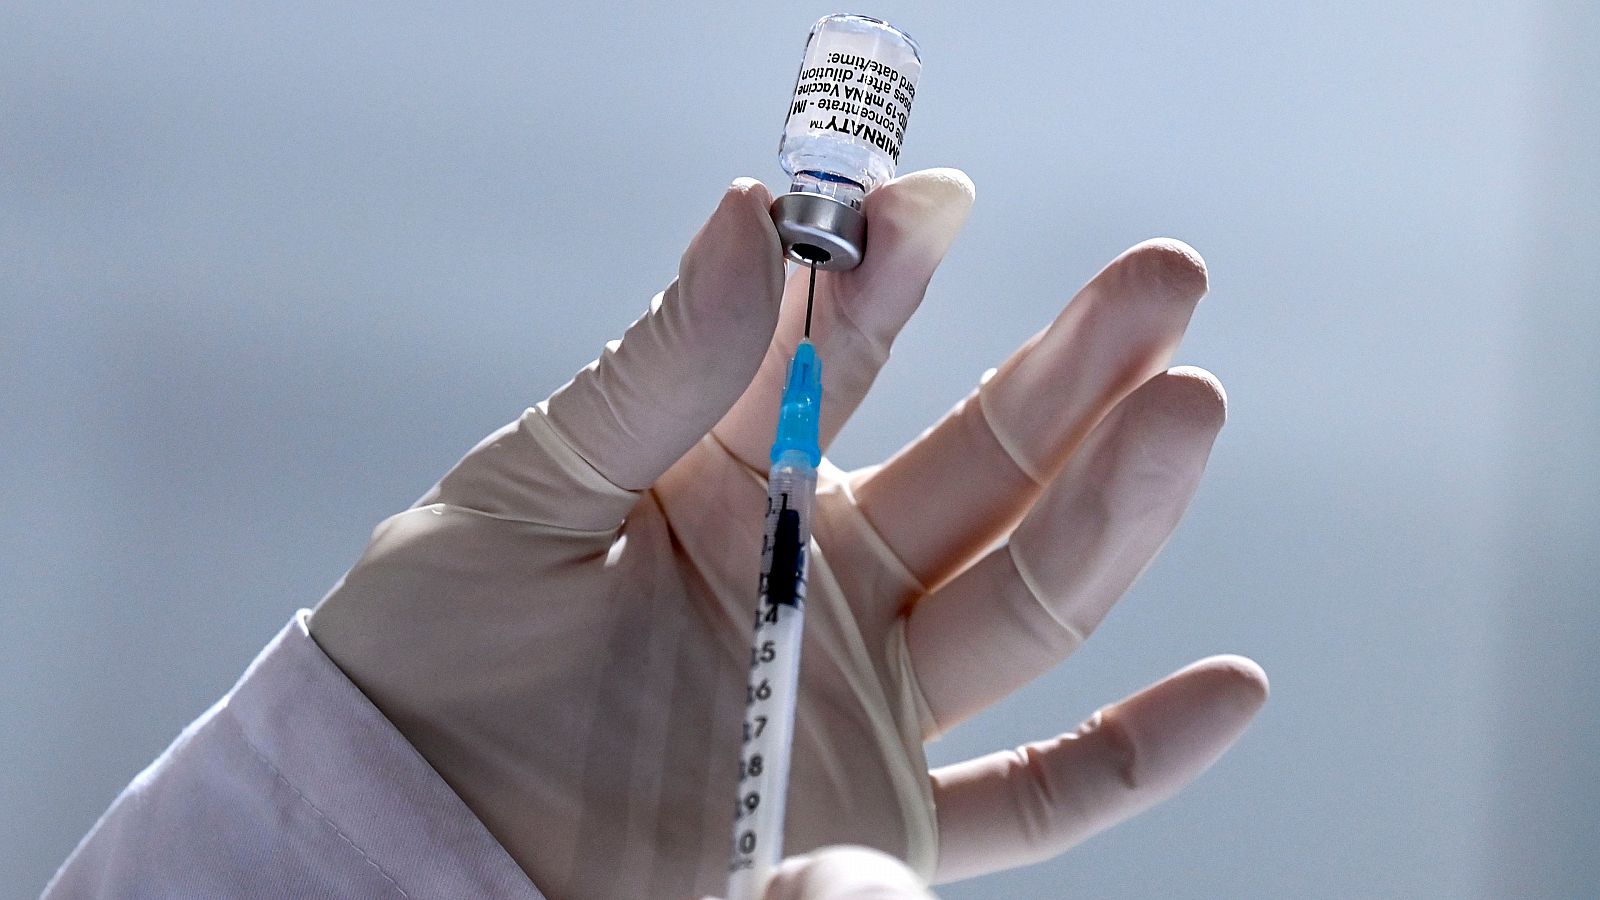 Un sanitario prepara una dosis de la vacuna contra el coronavirus